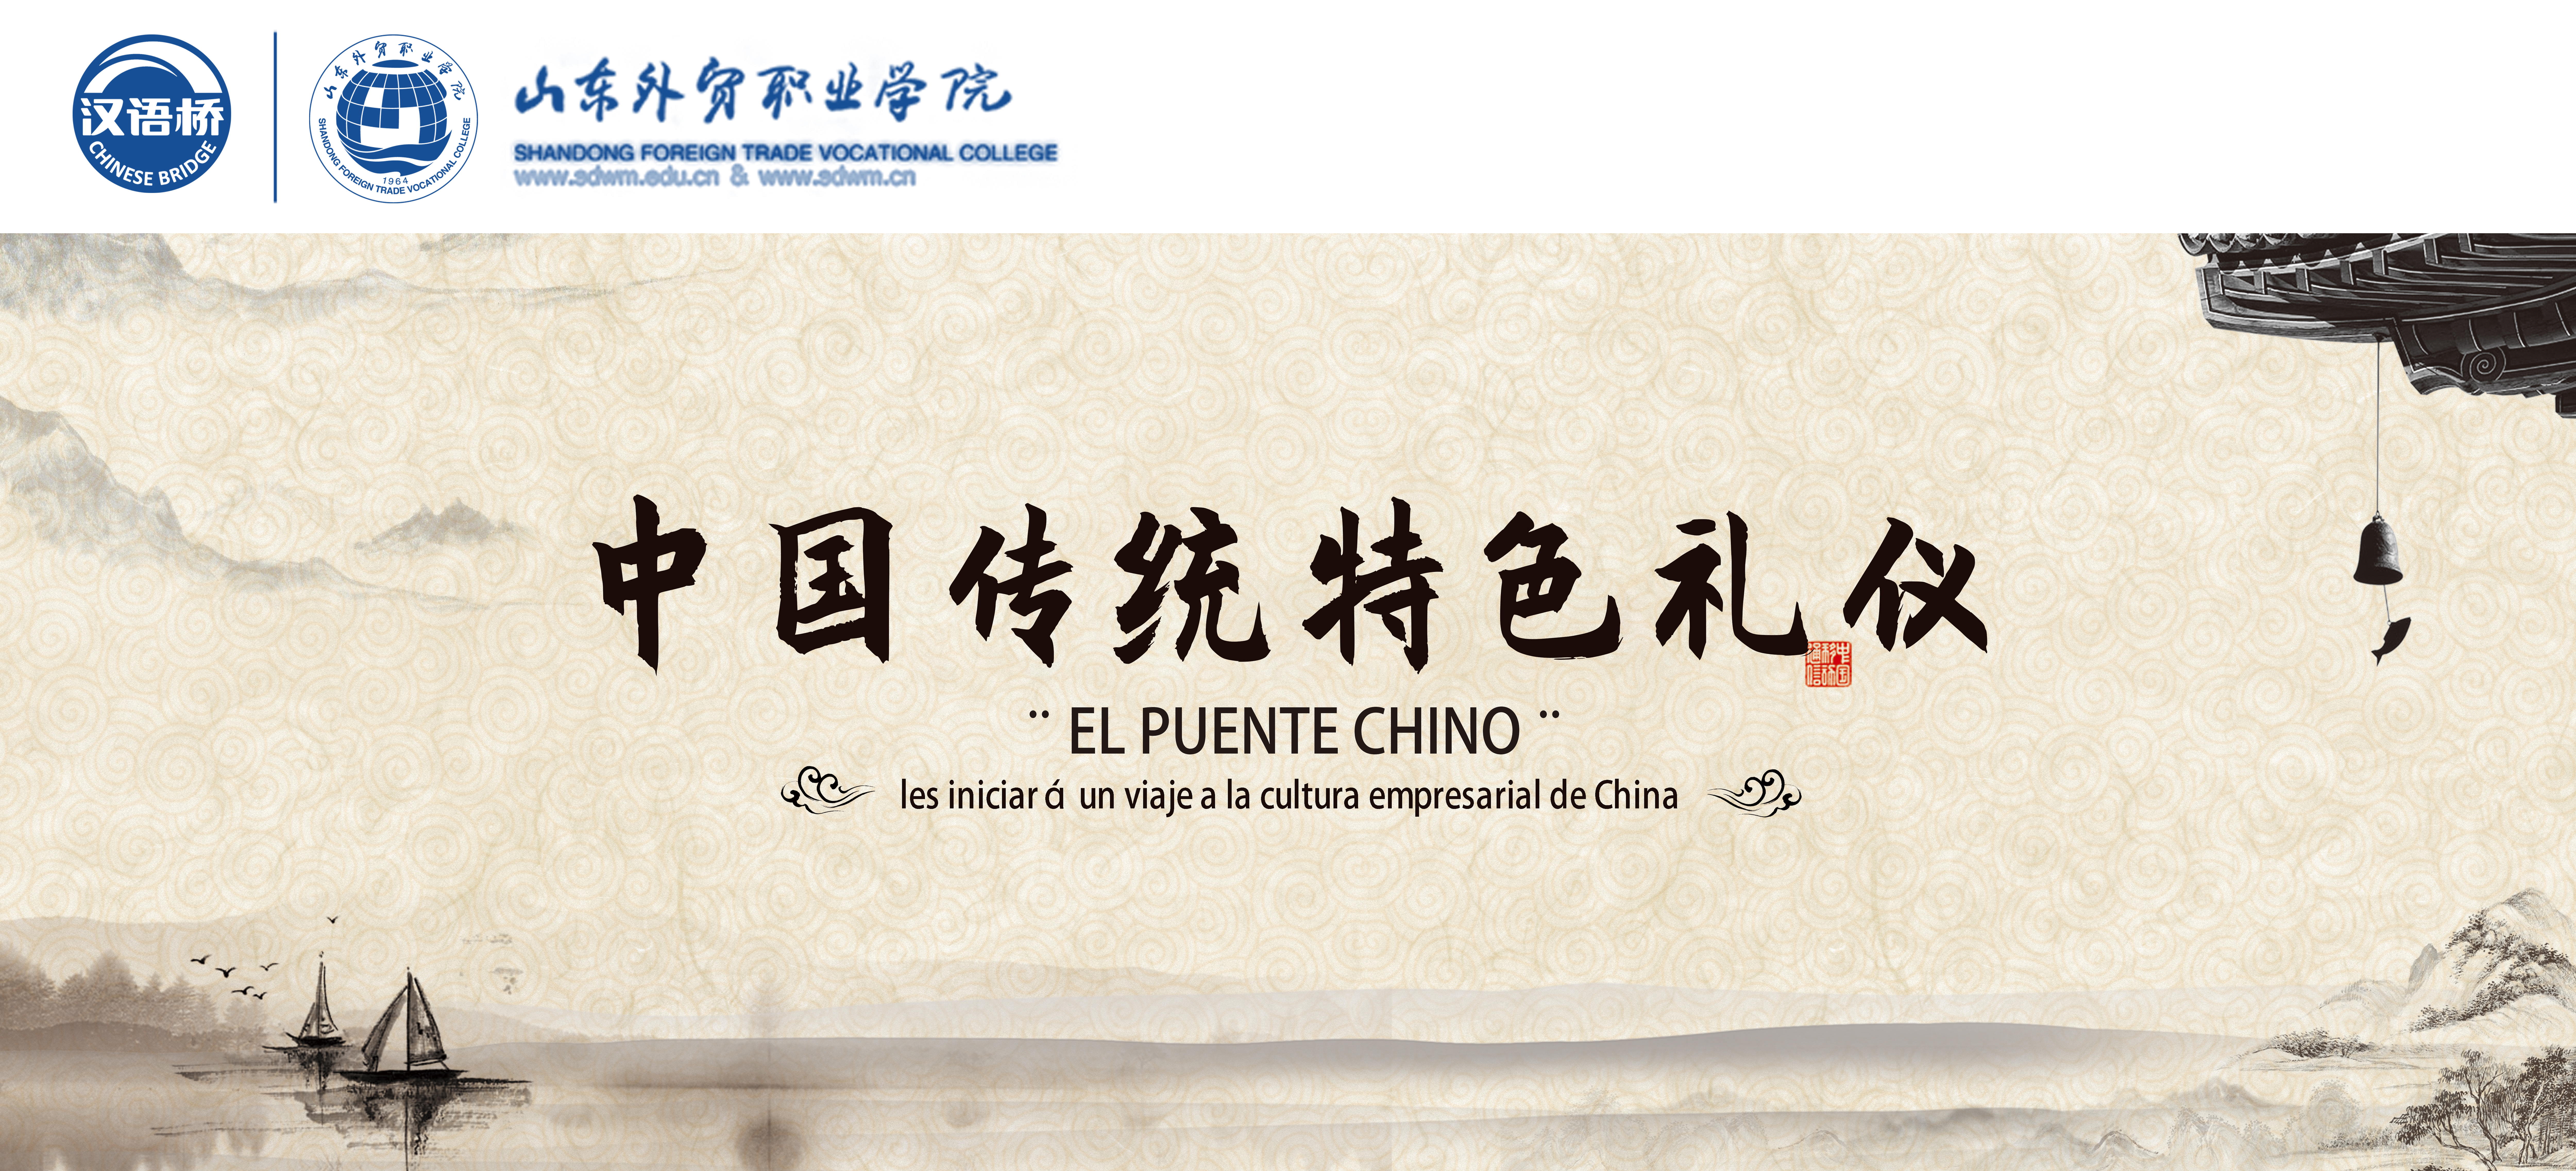 Viaje cultural: Etiqueta tradicional china